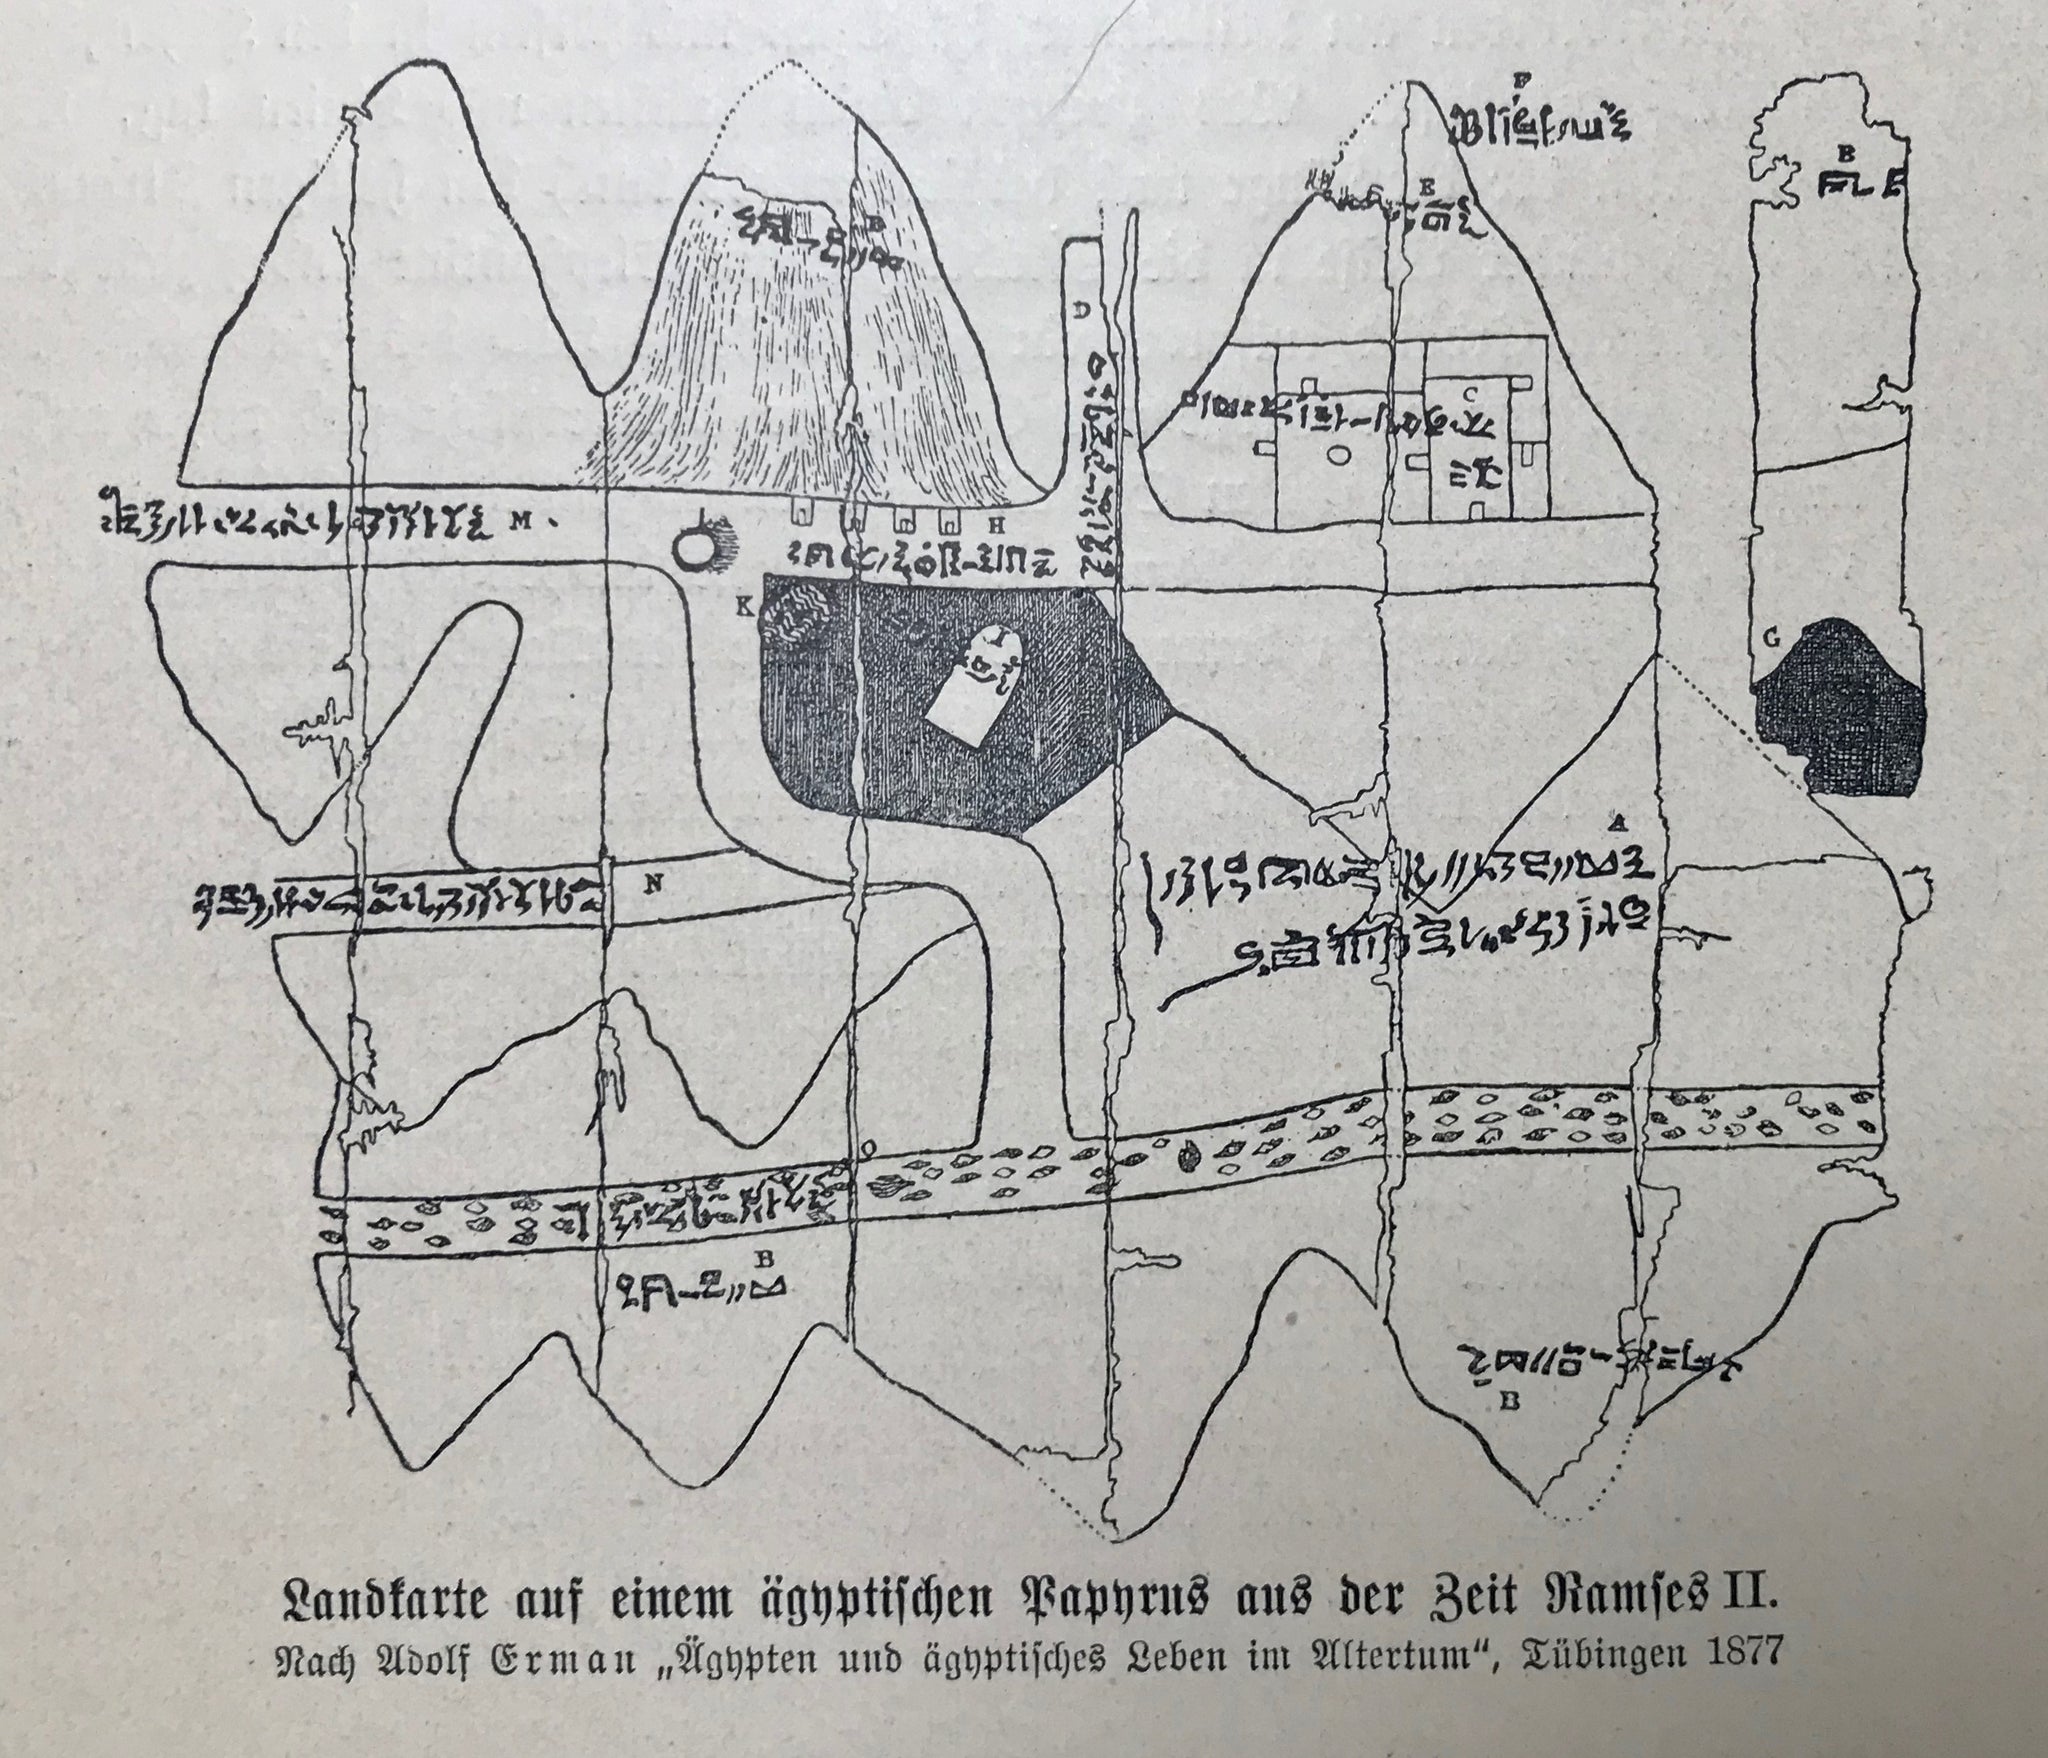 Egypt,maps, "Landkarte auf einem aegyptischen Papyrus aus der Zeit Ramses II" ( Egytian map that was made on pappyrus at the time of Ramses II )